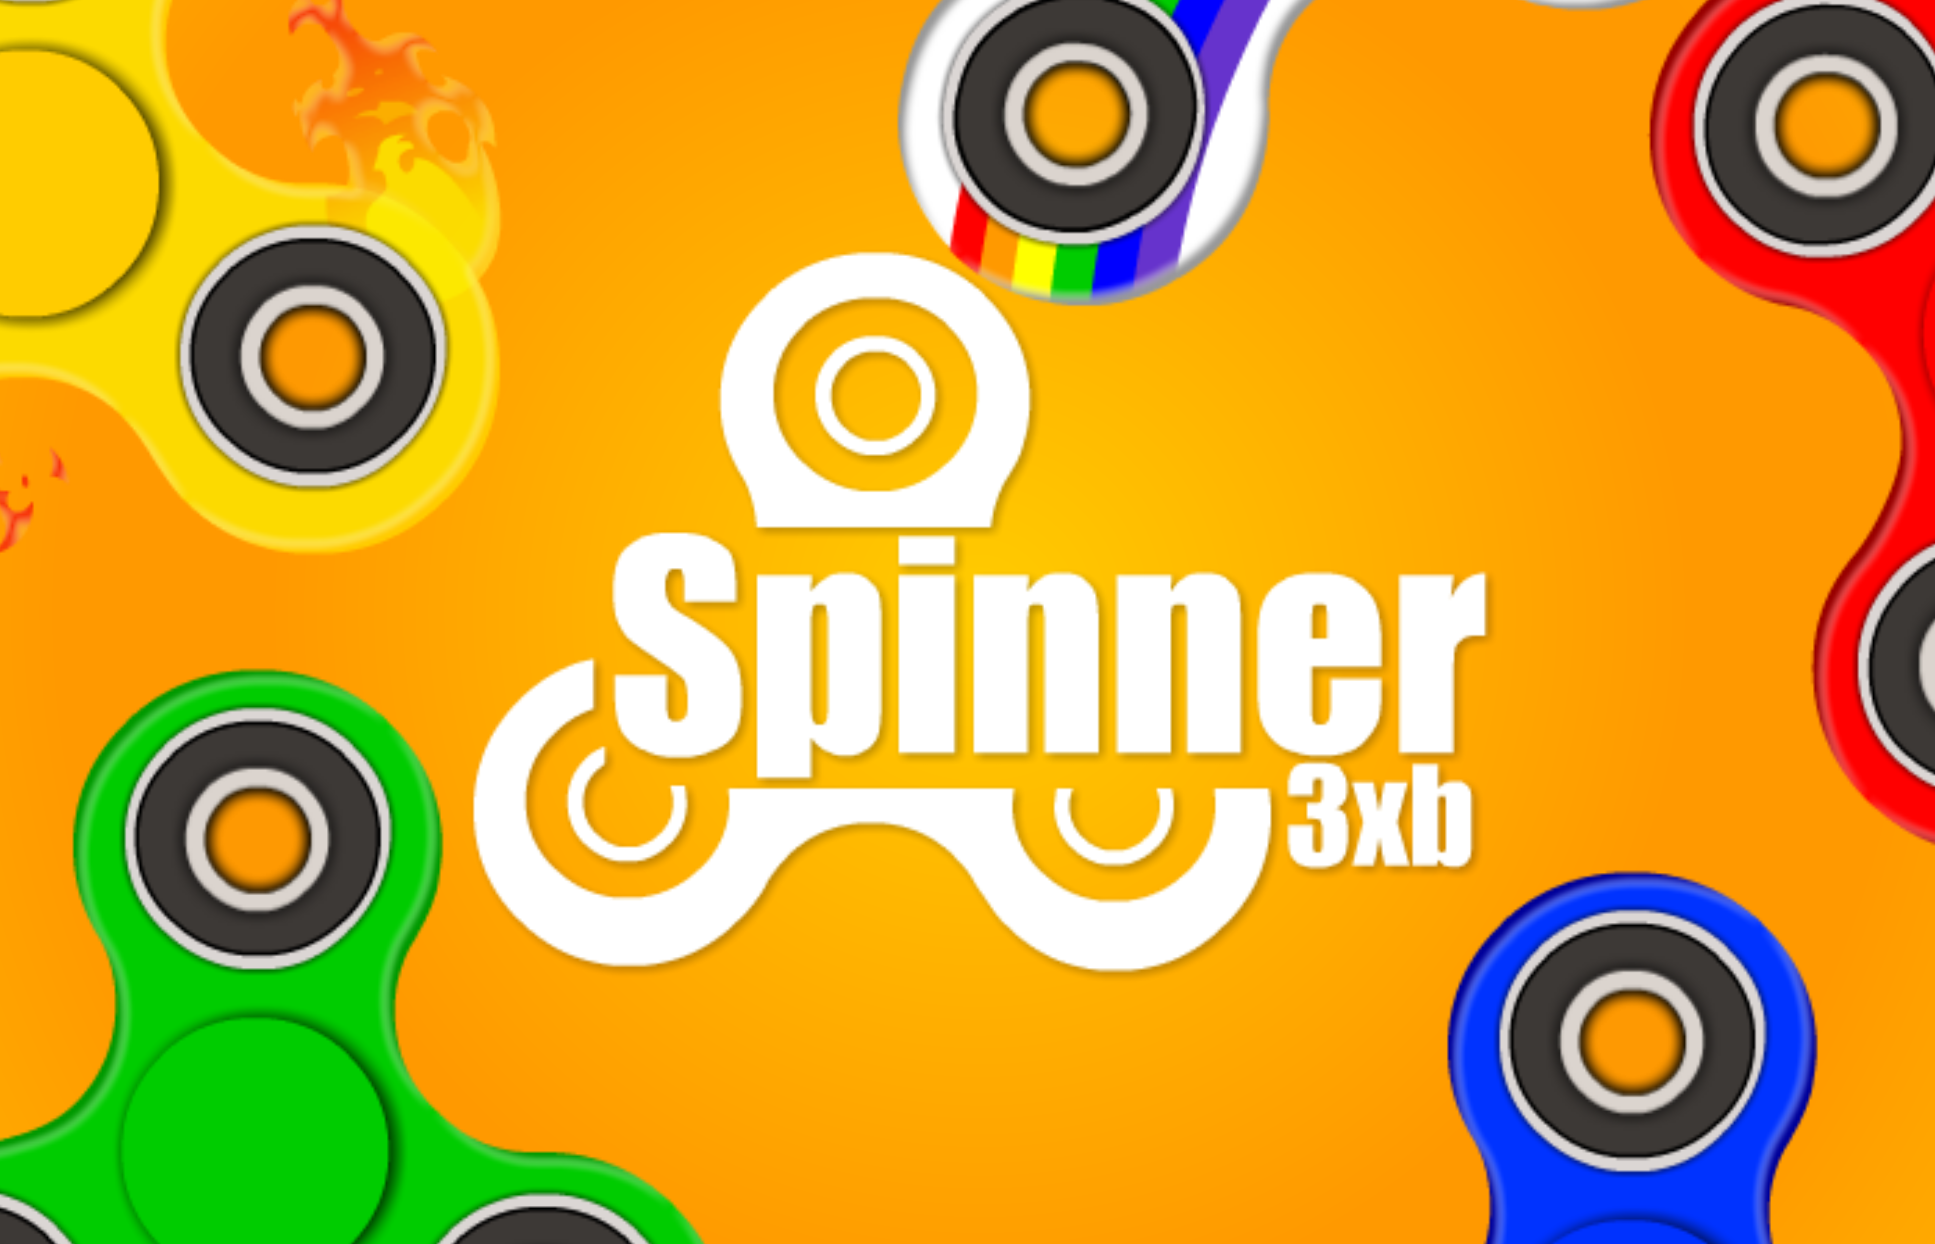 Spinner 3xb